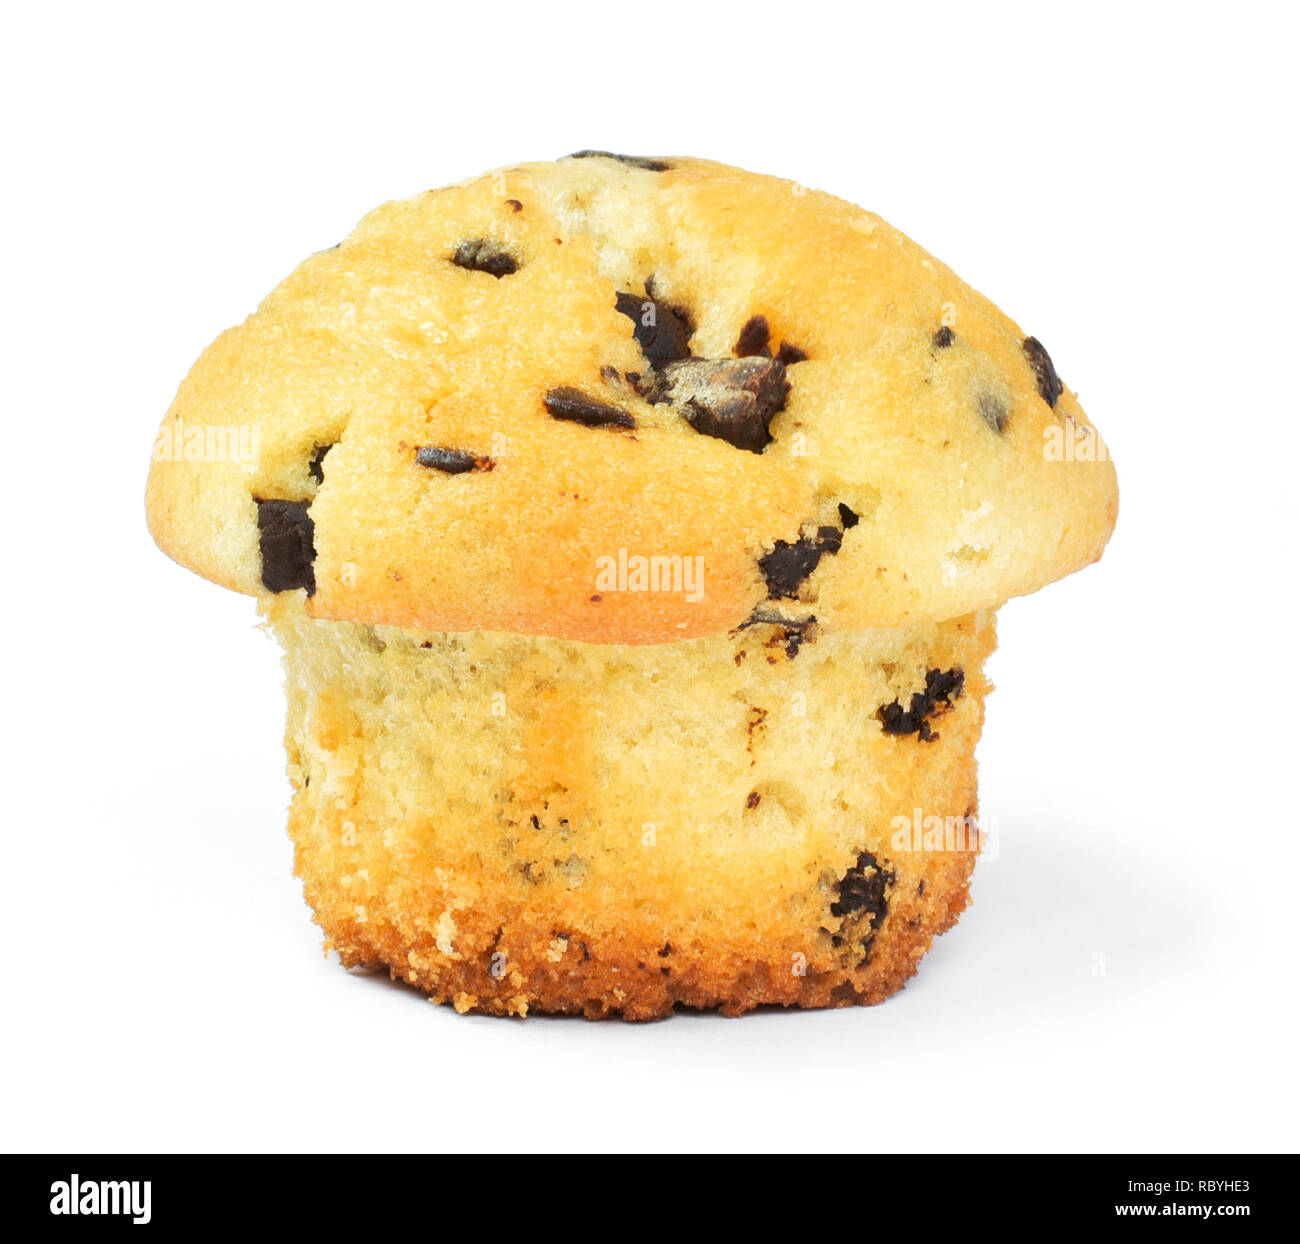 Deliziosi muffin alla vaniglia o al cioccolato tortina, isolato su sfondo bianco. Pirottini di carta e cibi dolci o non integri in tema di mangiare. Foto Stock